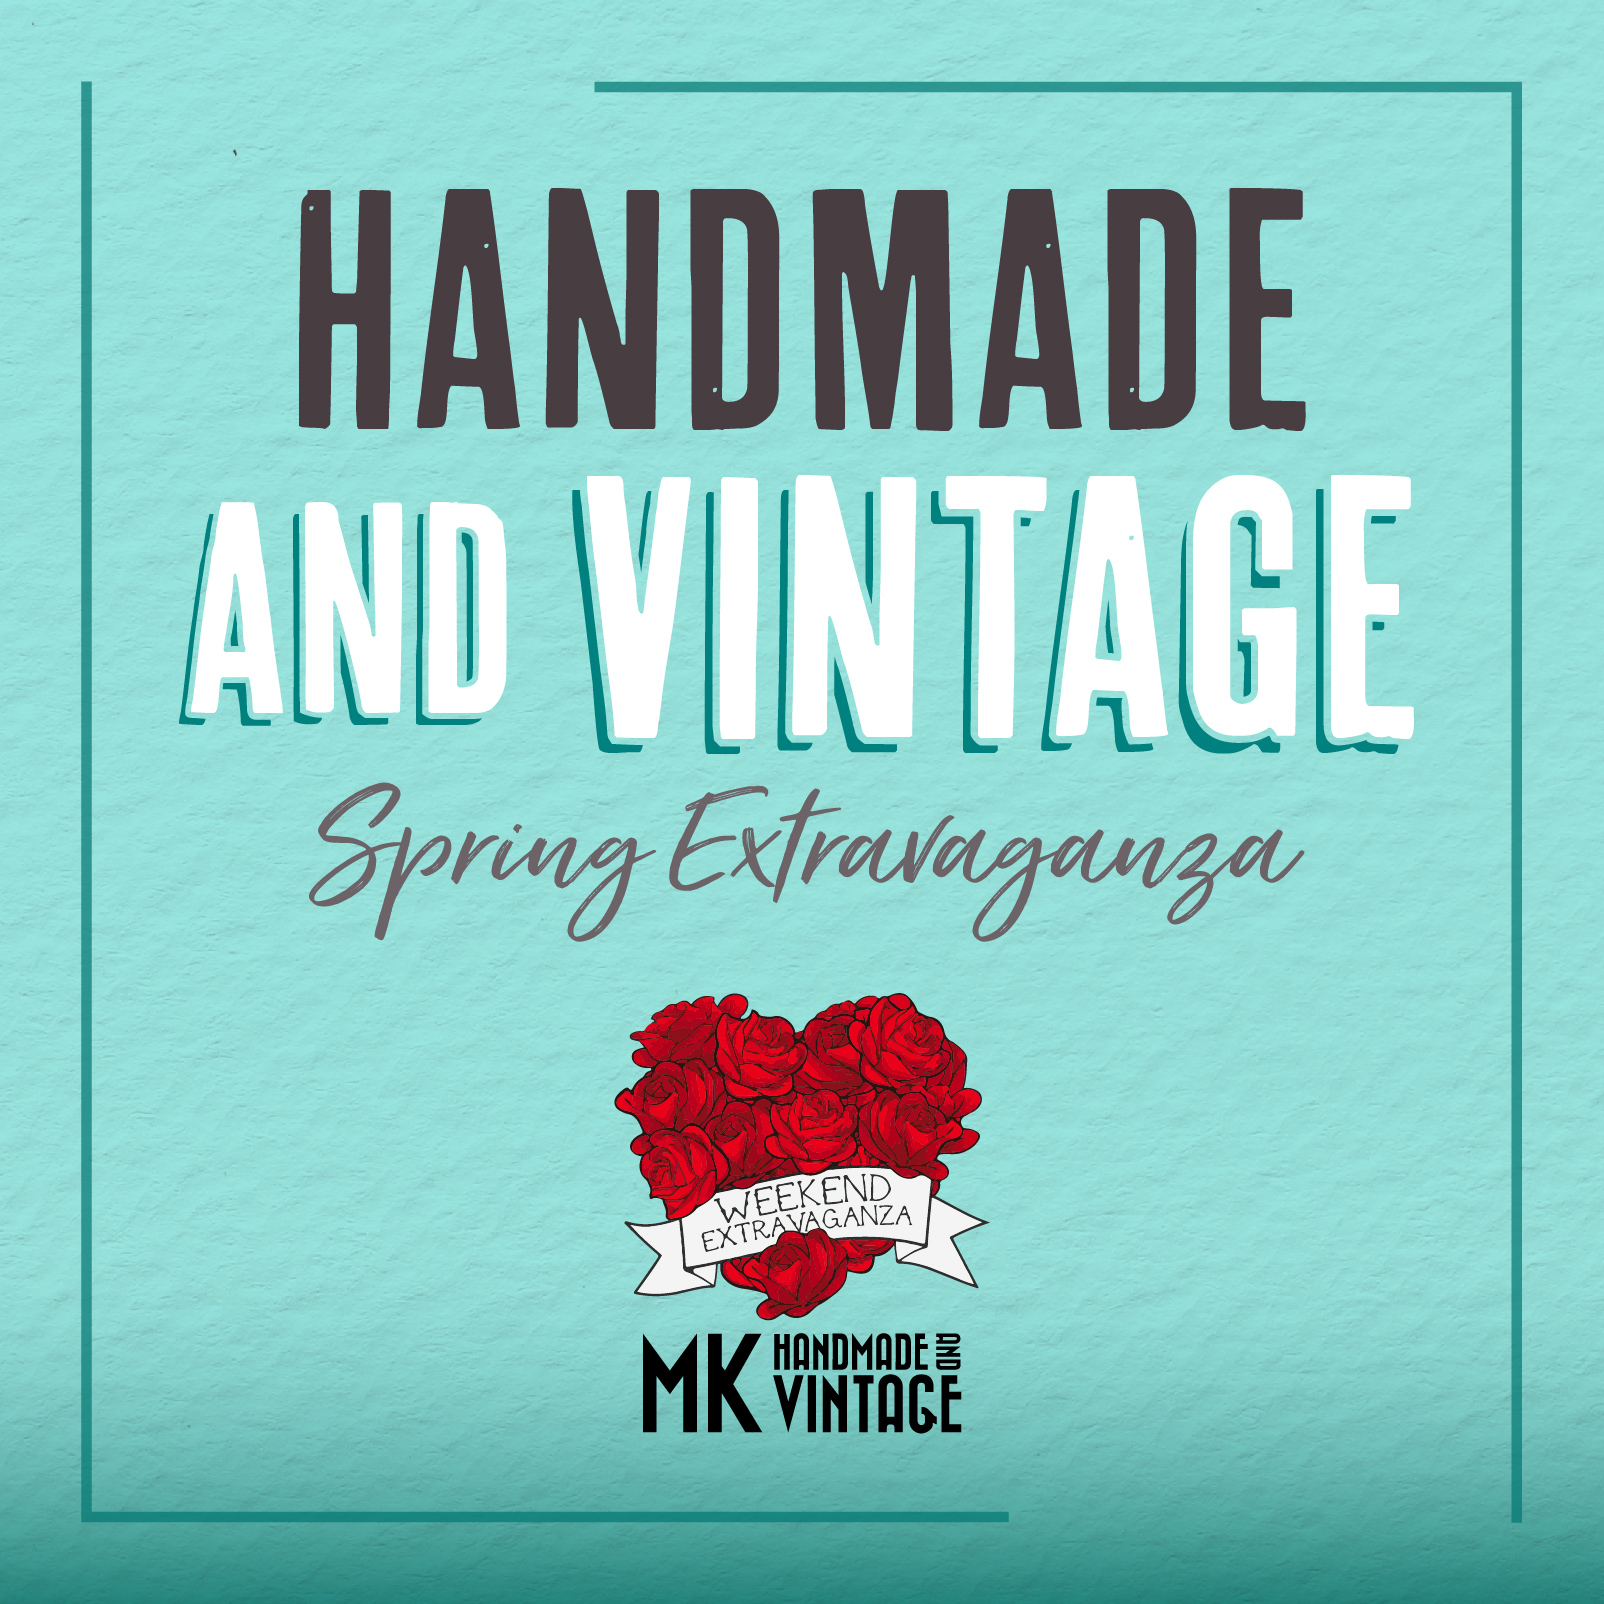 Handmade & Vintage Spring Extravaganza